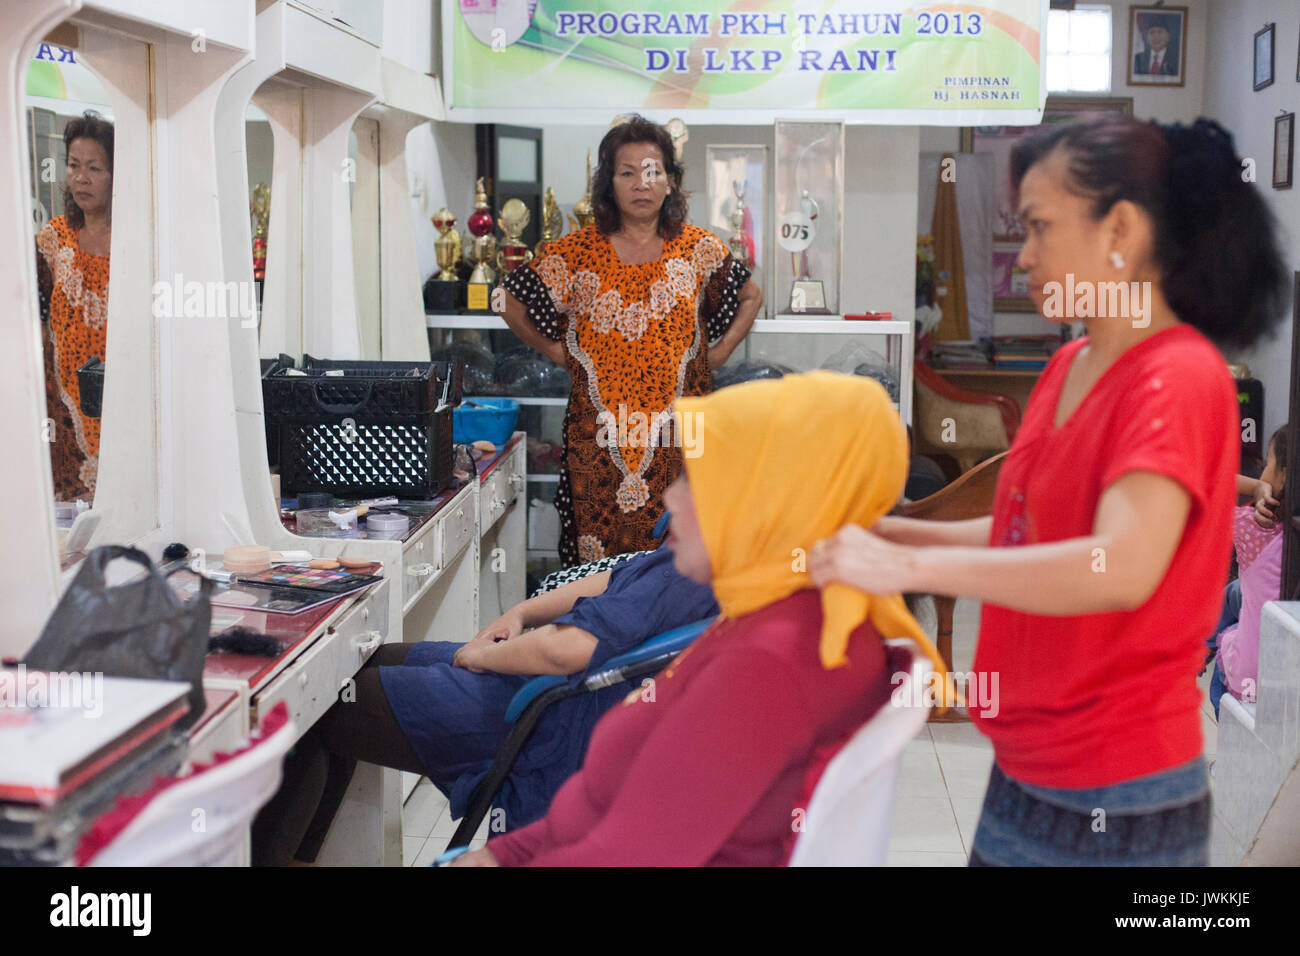 Ibu Haja Hasna ist ein weiteres erfolgreiches transgender Frau besitzen eine Hochzeit Organisation von Unternehmen im Süden von Sulawesi. Sie hat ihre Beauty Salon und Hochzeit organisieren Unternehmen 1976 begann, eines der ältesten und berühmtesten im Bereich der Sidrap, wo sie lebt. Sie hat zahlreiche regionale und nationale Auszeichnungen in Bugis traditionelle Hochzeit Make-up-Wettbewerbe, die in ihrer Limousine angezeigt werden gewonnen. Heute, Ibu Haja Hasna bevorzugt die Arbeit ihrer Mitarbeiter im Beauty Salon zu überwachen. Sie wählt ihre Mitarbeiter aus dem Studenten die Teilnahme an der kostenfreien traditionellen Buginese Make-up-Klassen organisiert Sie Stockfoto